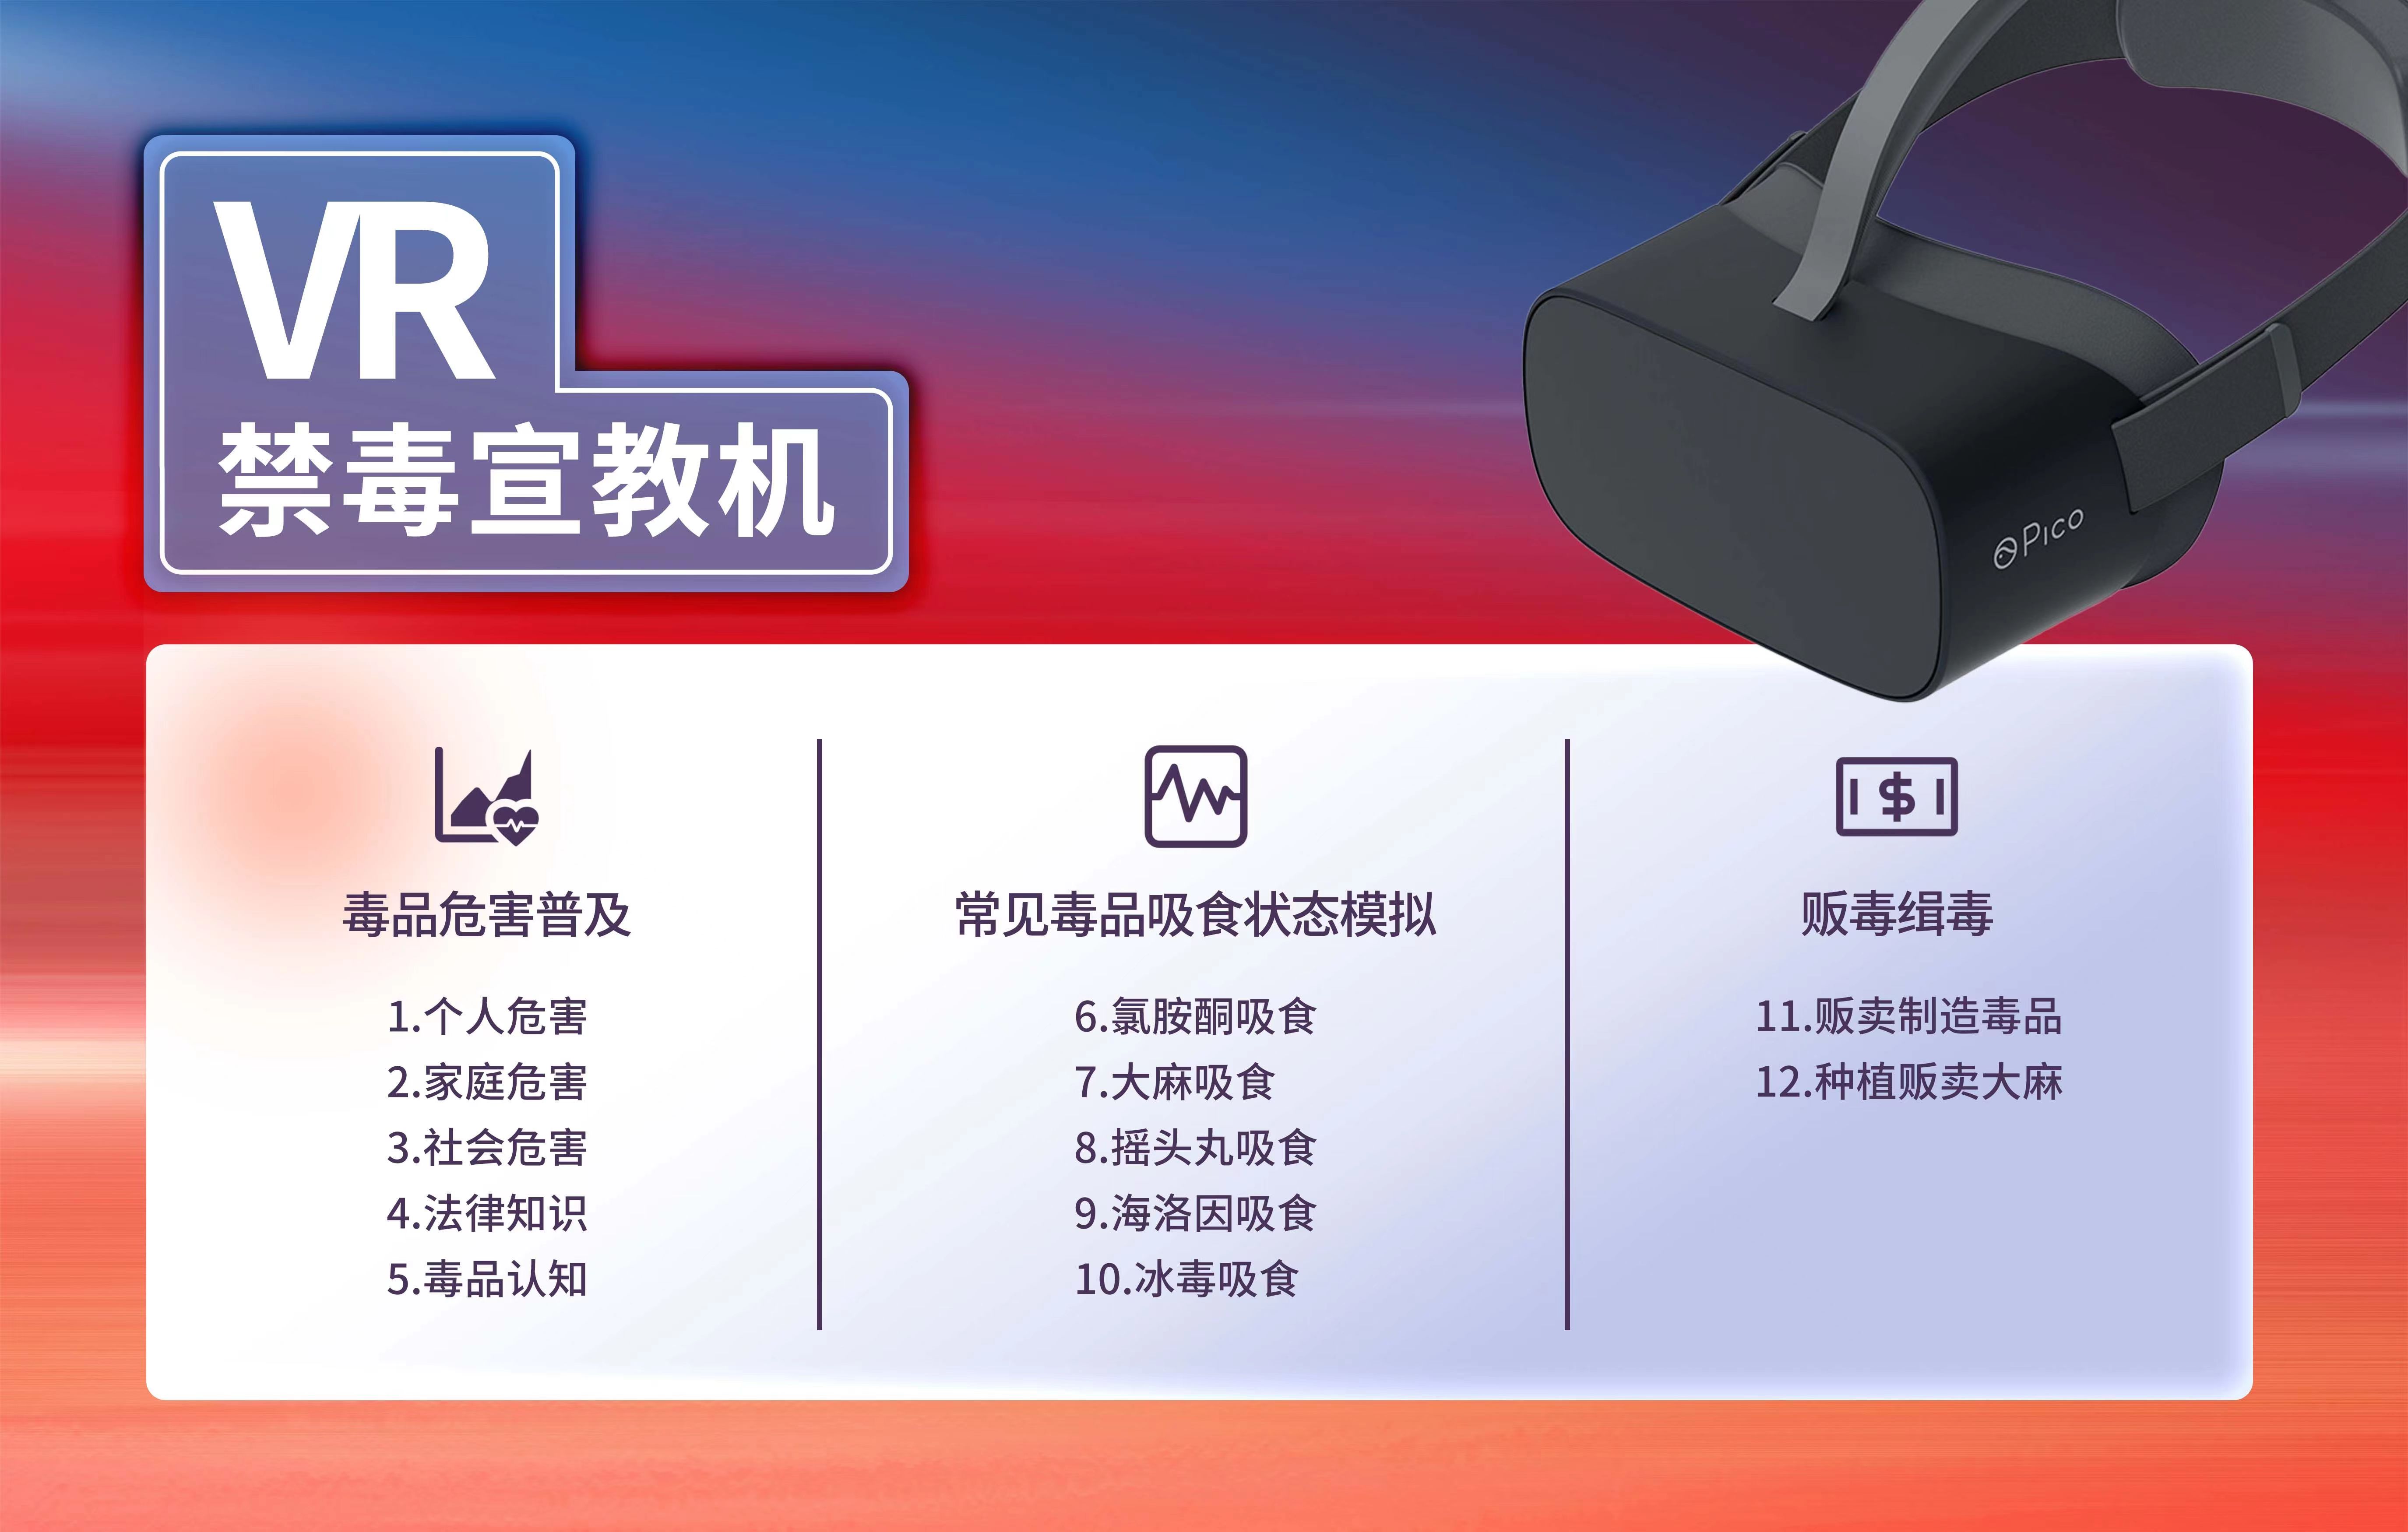 VR禁毒学习机,VR禁毒软件,vr禁毒展厅,禁毒VR体验设备.jpg